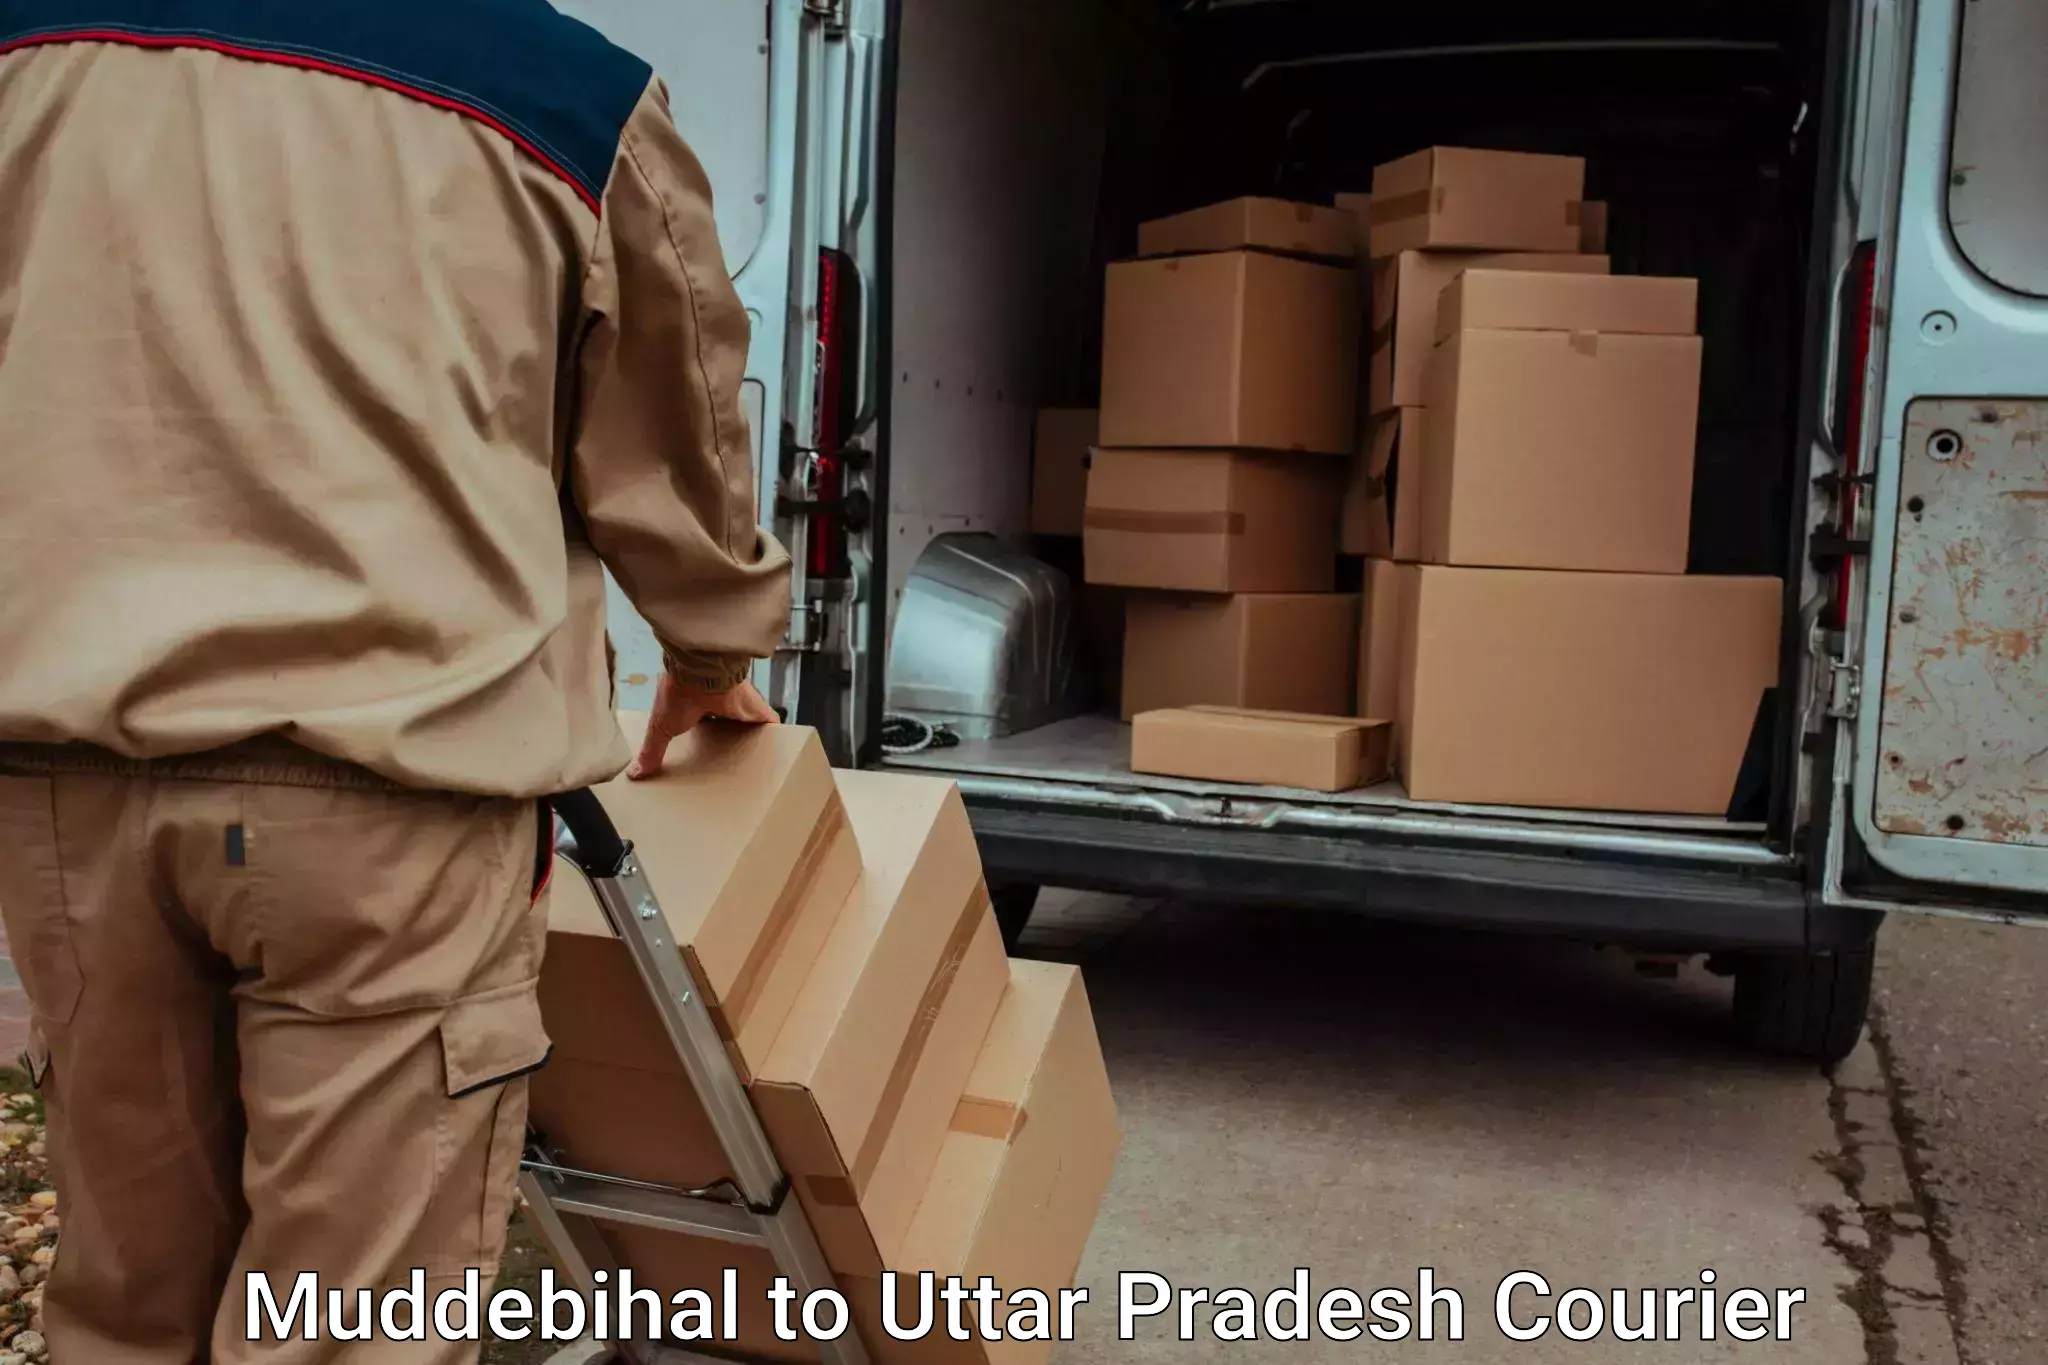 Furniture transport specialists Muddebihal to Faridpur